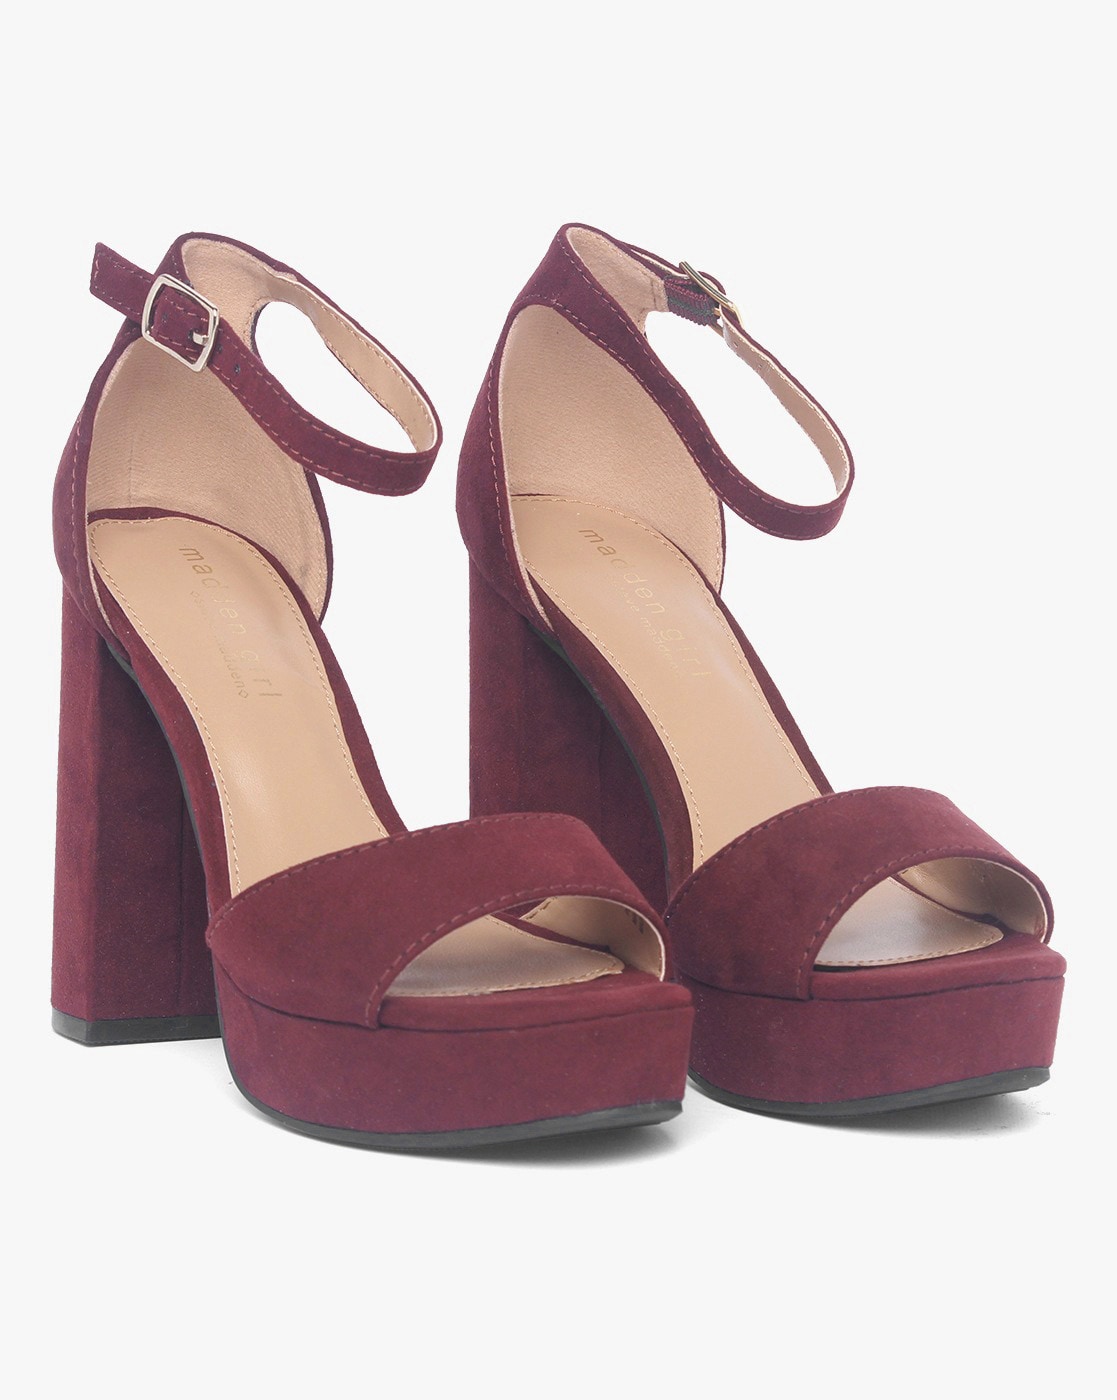 burgundy steve madden heels